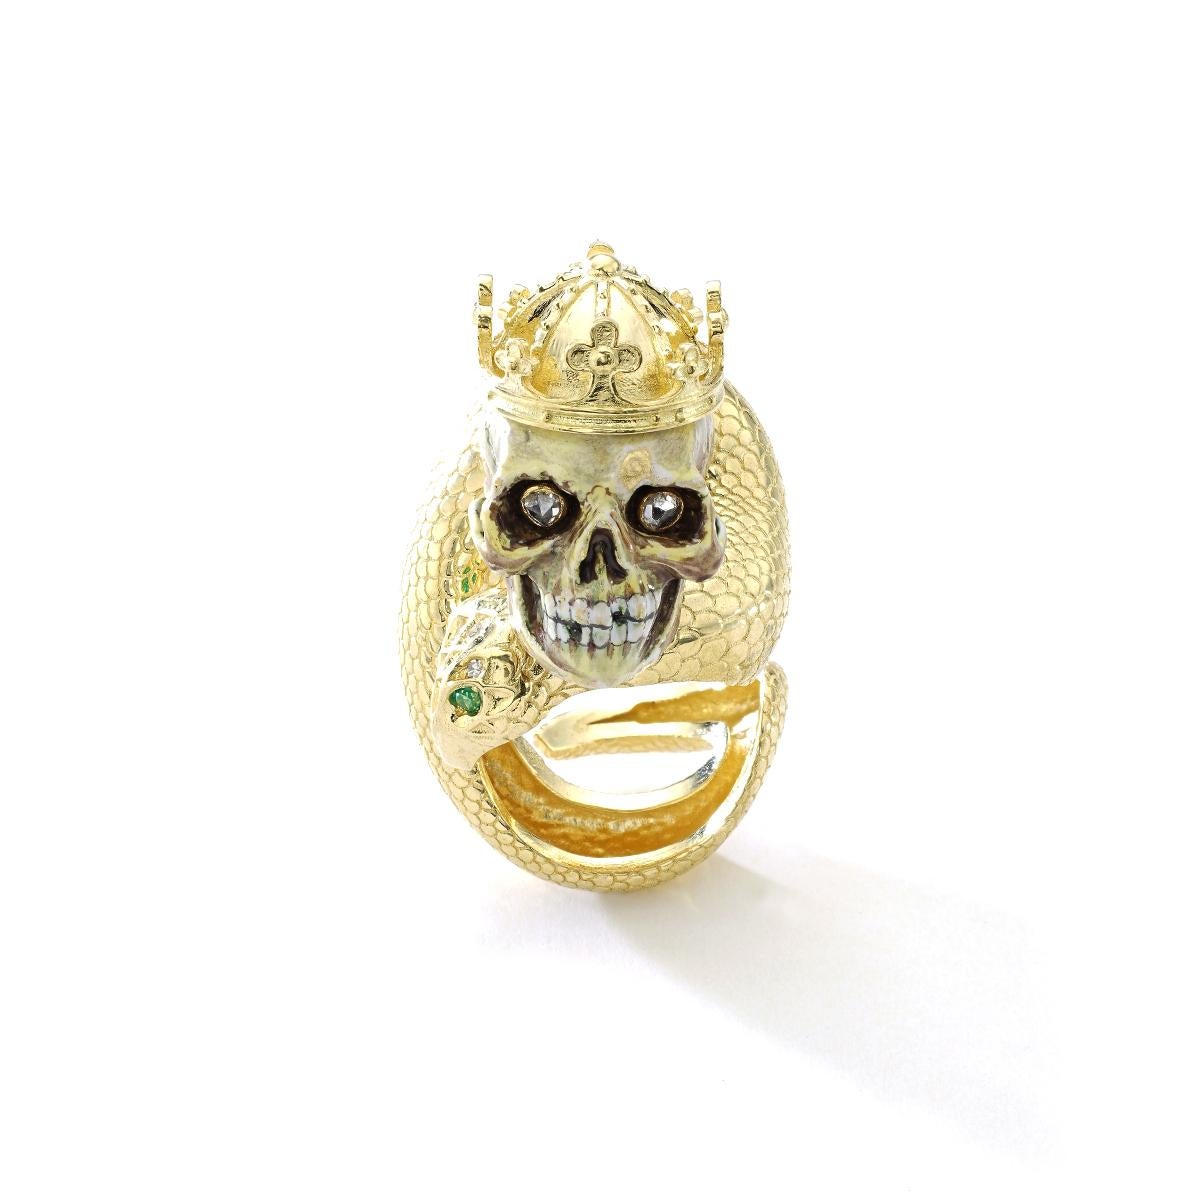 Der Schädel ist antik circa 19. Jahrhundert unglaublich emailliert auf Gold. Die Augen sind im Diamant-Rosenschliff.
Es ist prächtig auf eine Schlange Gelbgold 18k Ringfassung, den Kopf mit Diamanten und Smaragd Augen und eine Krone Gelbgold 18k